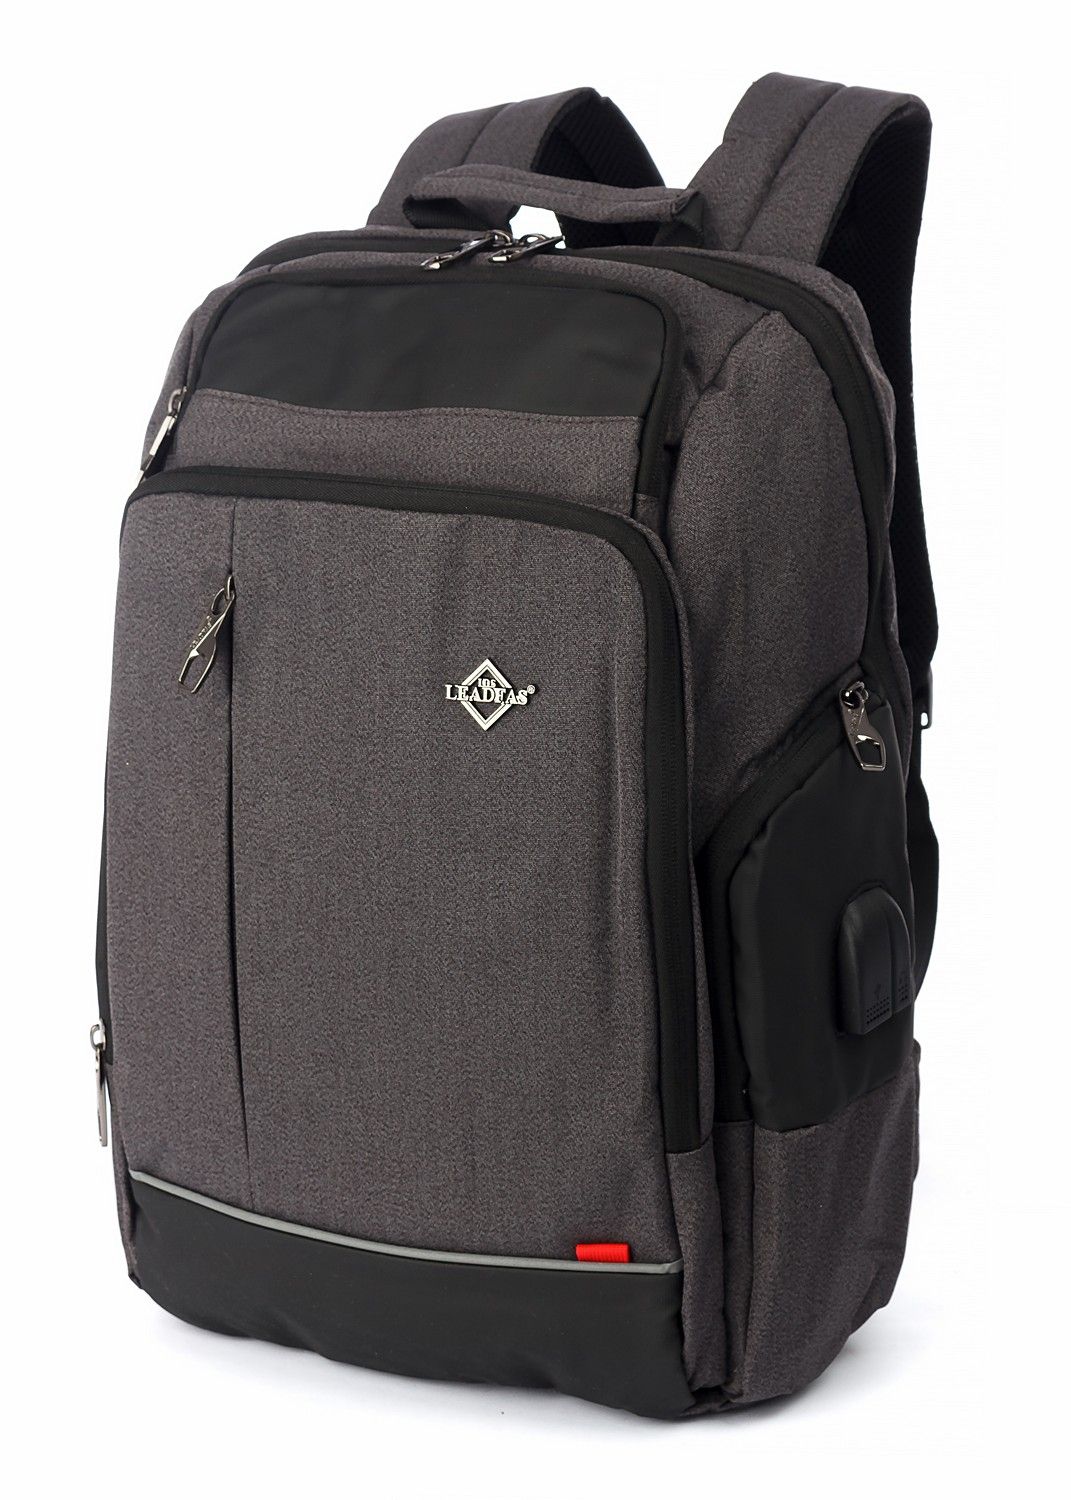 Рюкзак мужской городской, темно-серый, для ноутбука, с USB портом, объем 18л